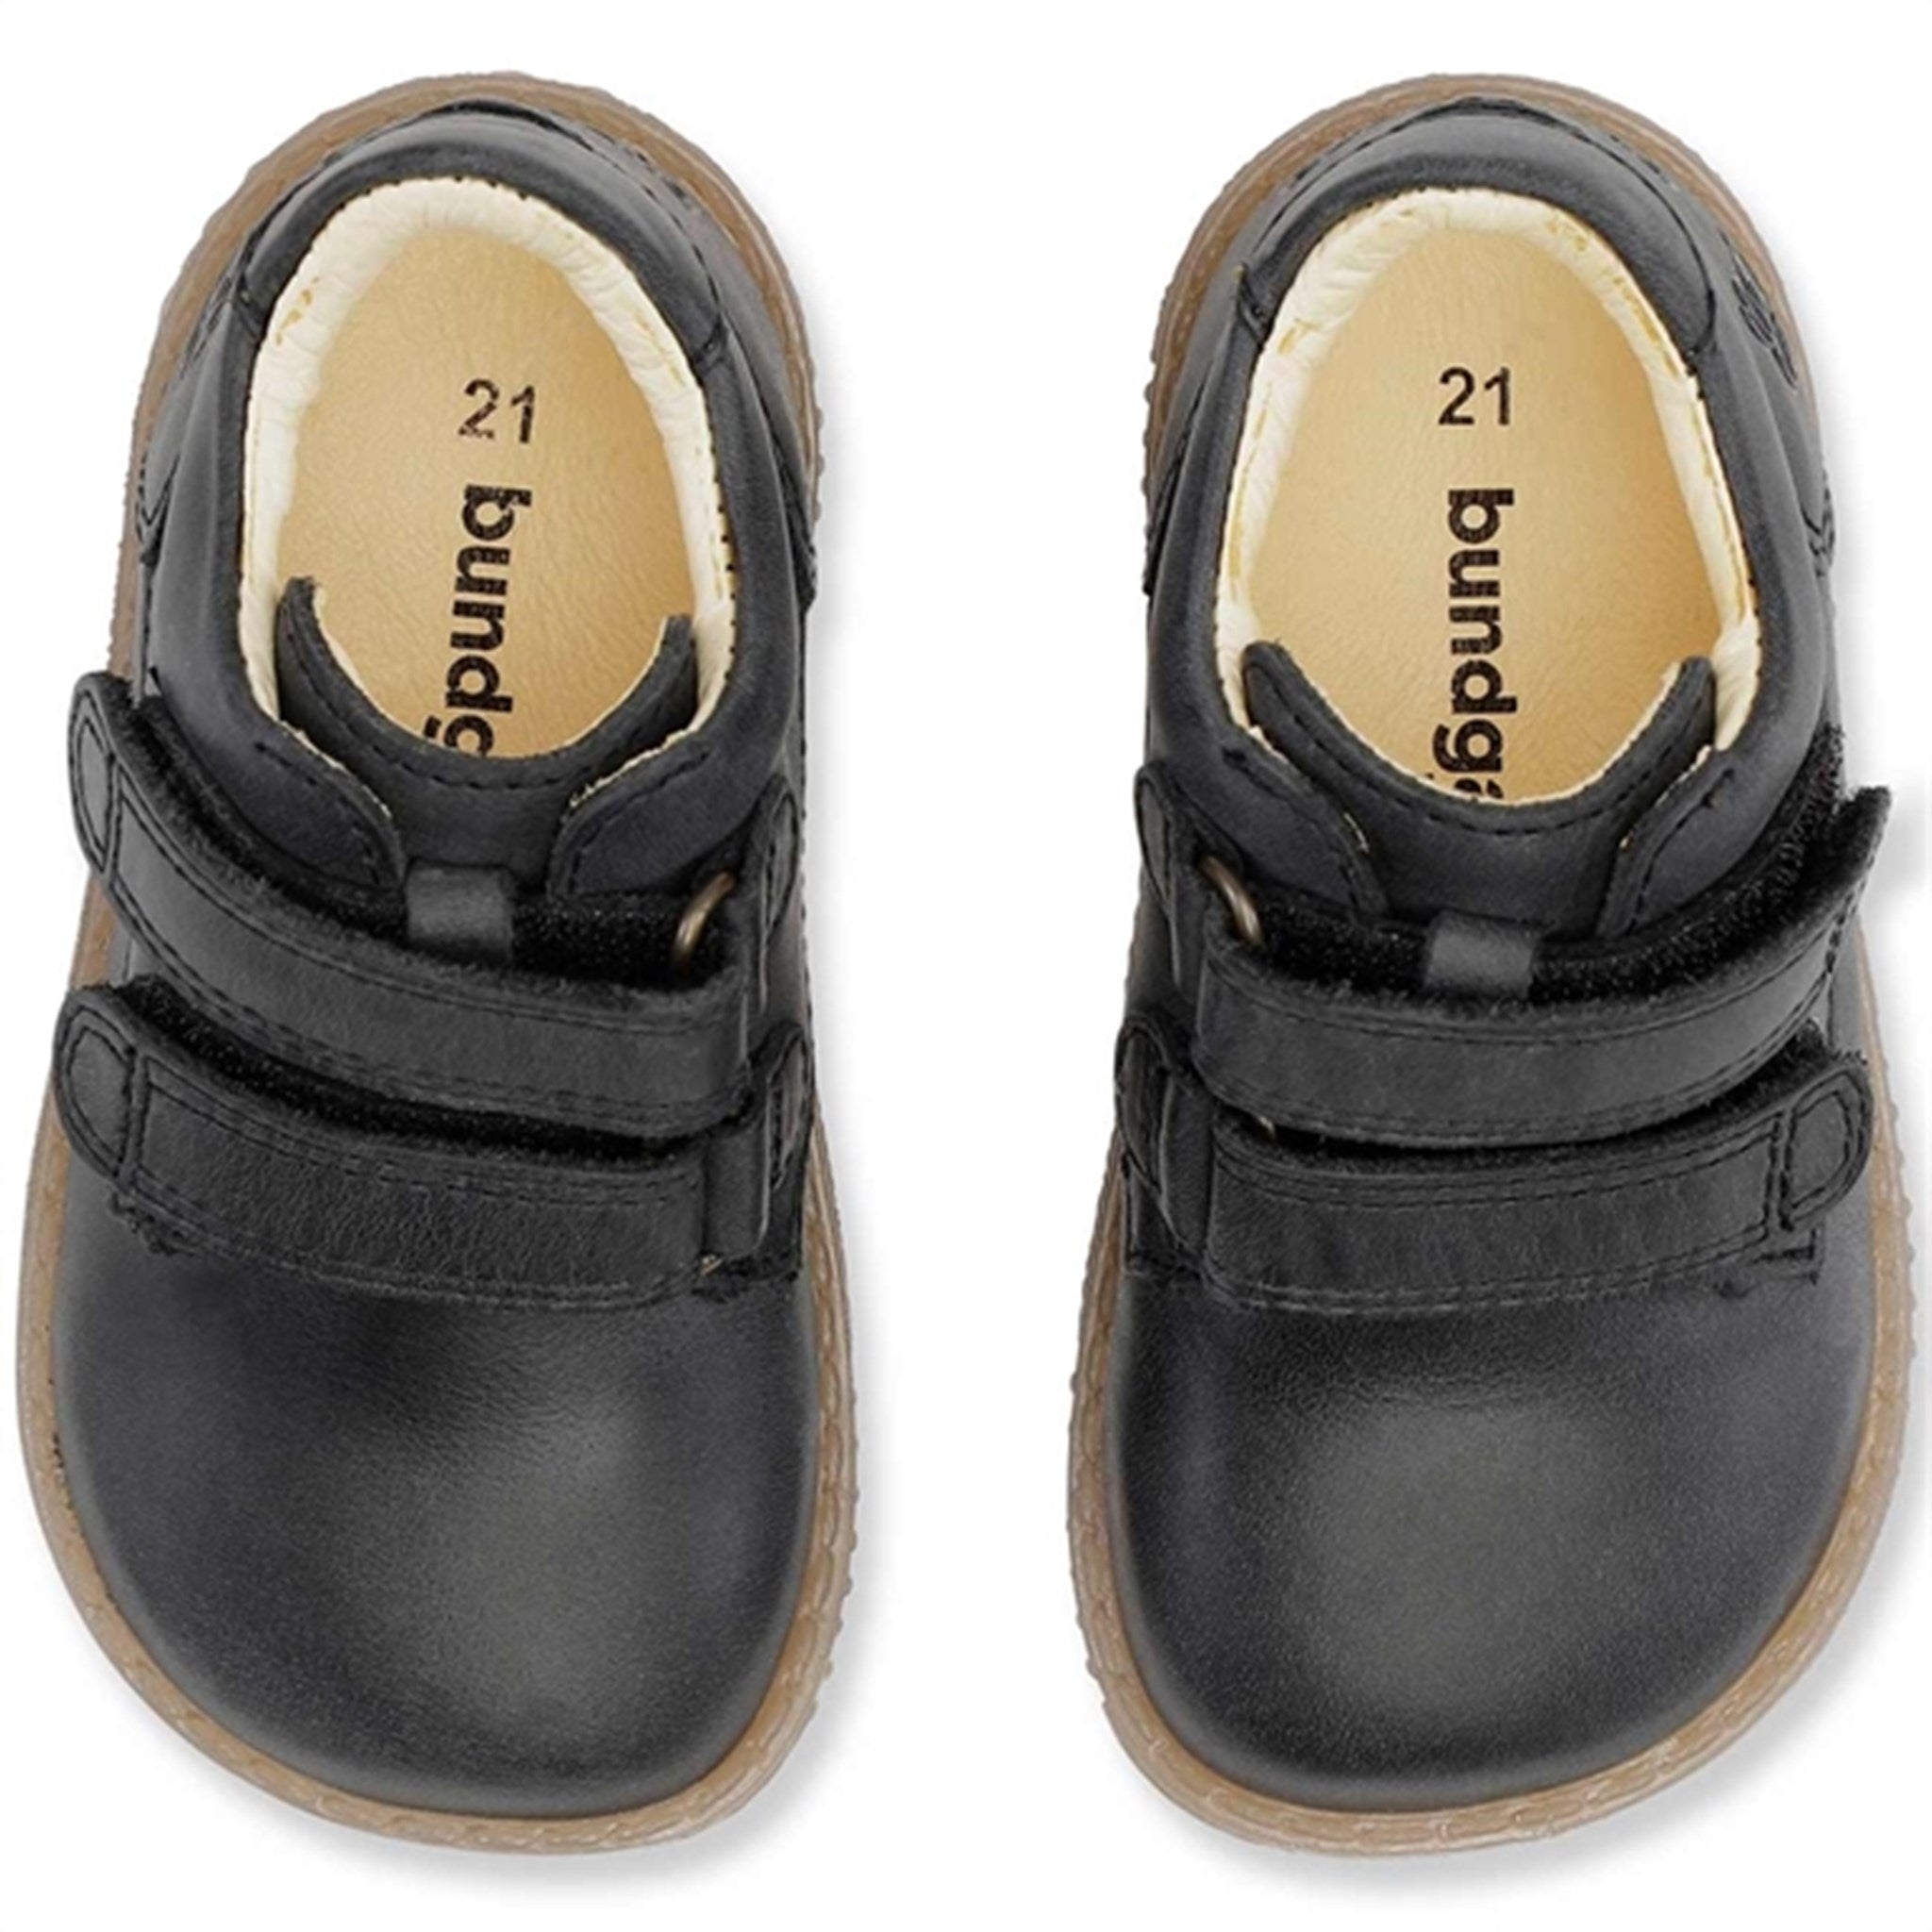 Bundgaard Ruby Kardborre Black Shoes 3